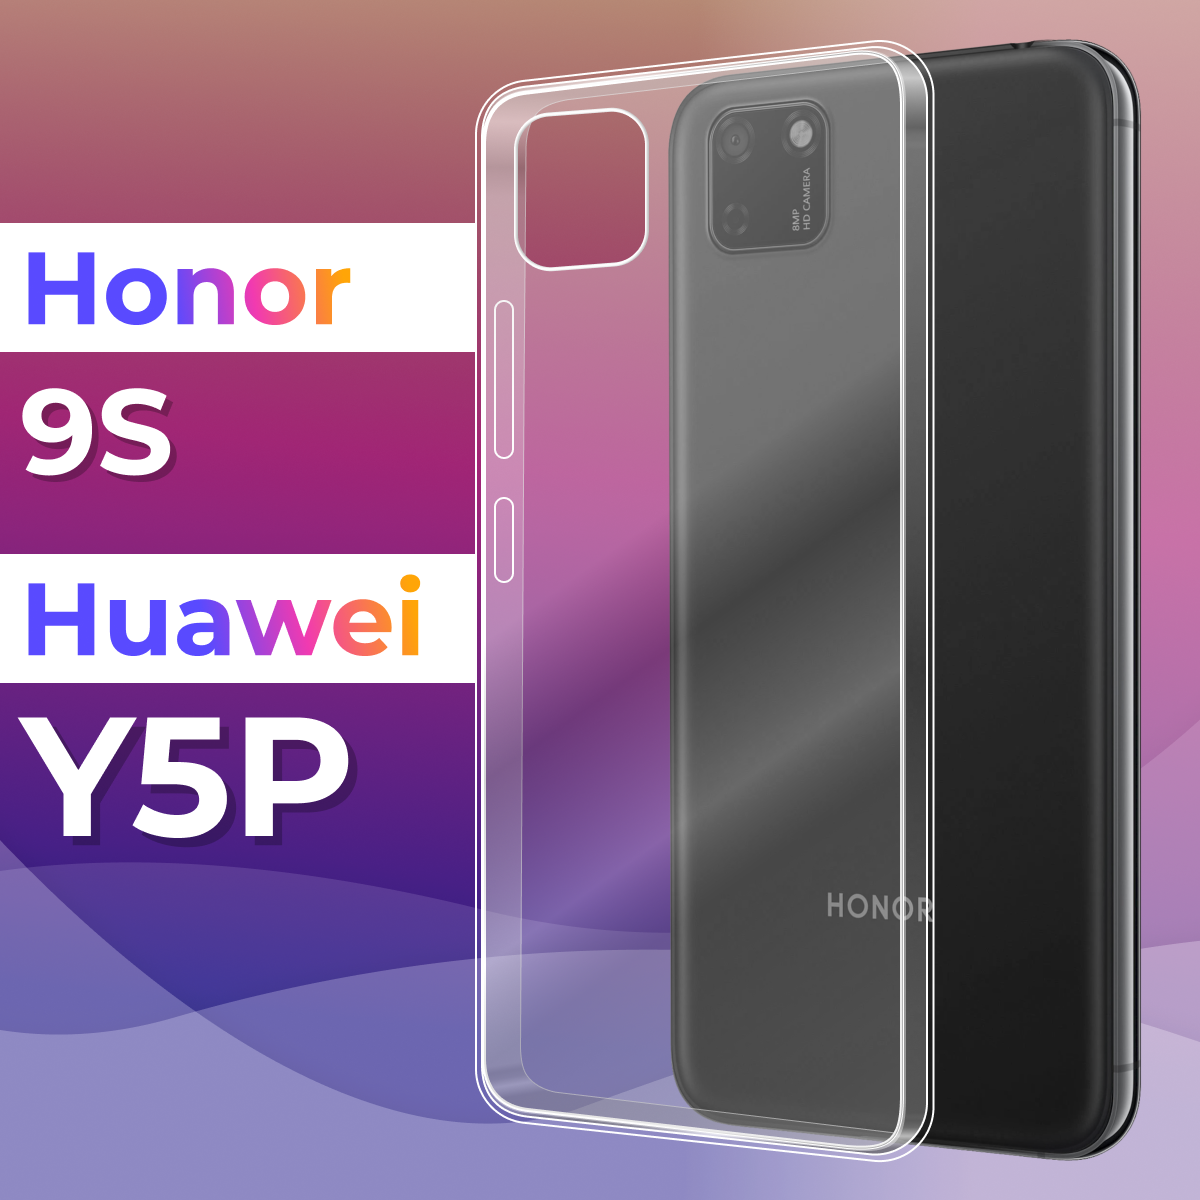 Тонкий силиконовый чехол для смартфона Honor 9S, Huawei Y5p / Противоударный защитный чехол для телефона Хонор 9с, Хуавей Ю5П (Прозрачный)